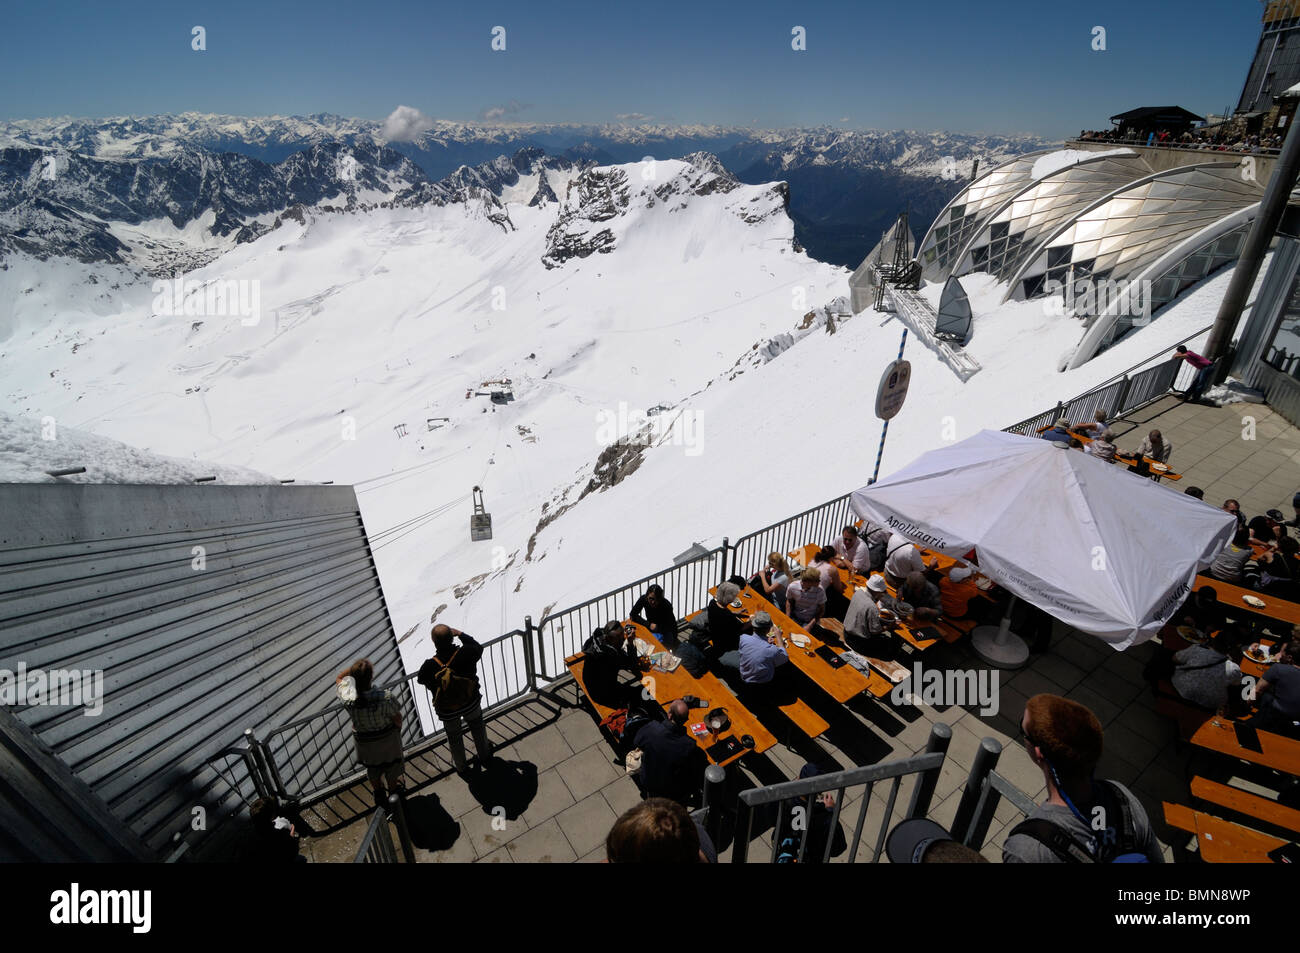 Cafe und Gebäuden, die auf der Suche über das Zugspitzplatt-Gletscher vom Gipfel der Zugspitze, Deutschlands höchstem Punkt Stockfoto